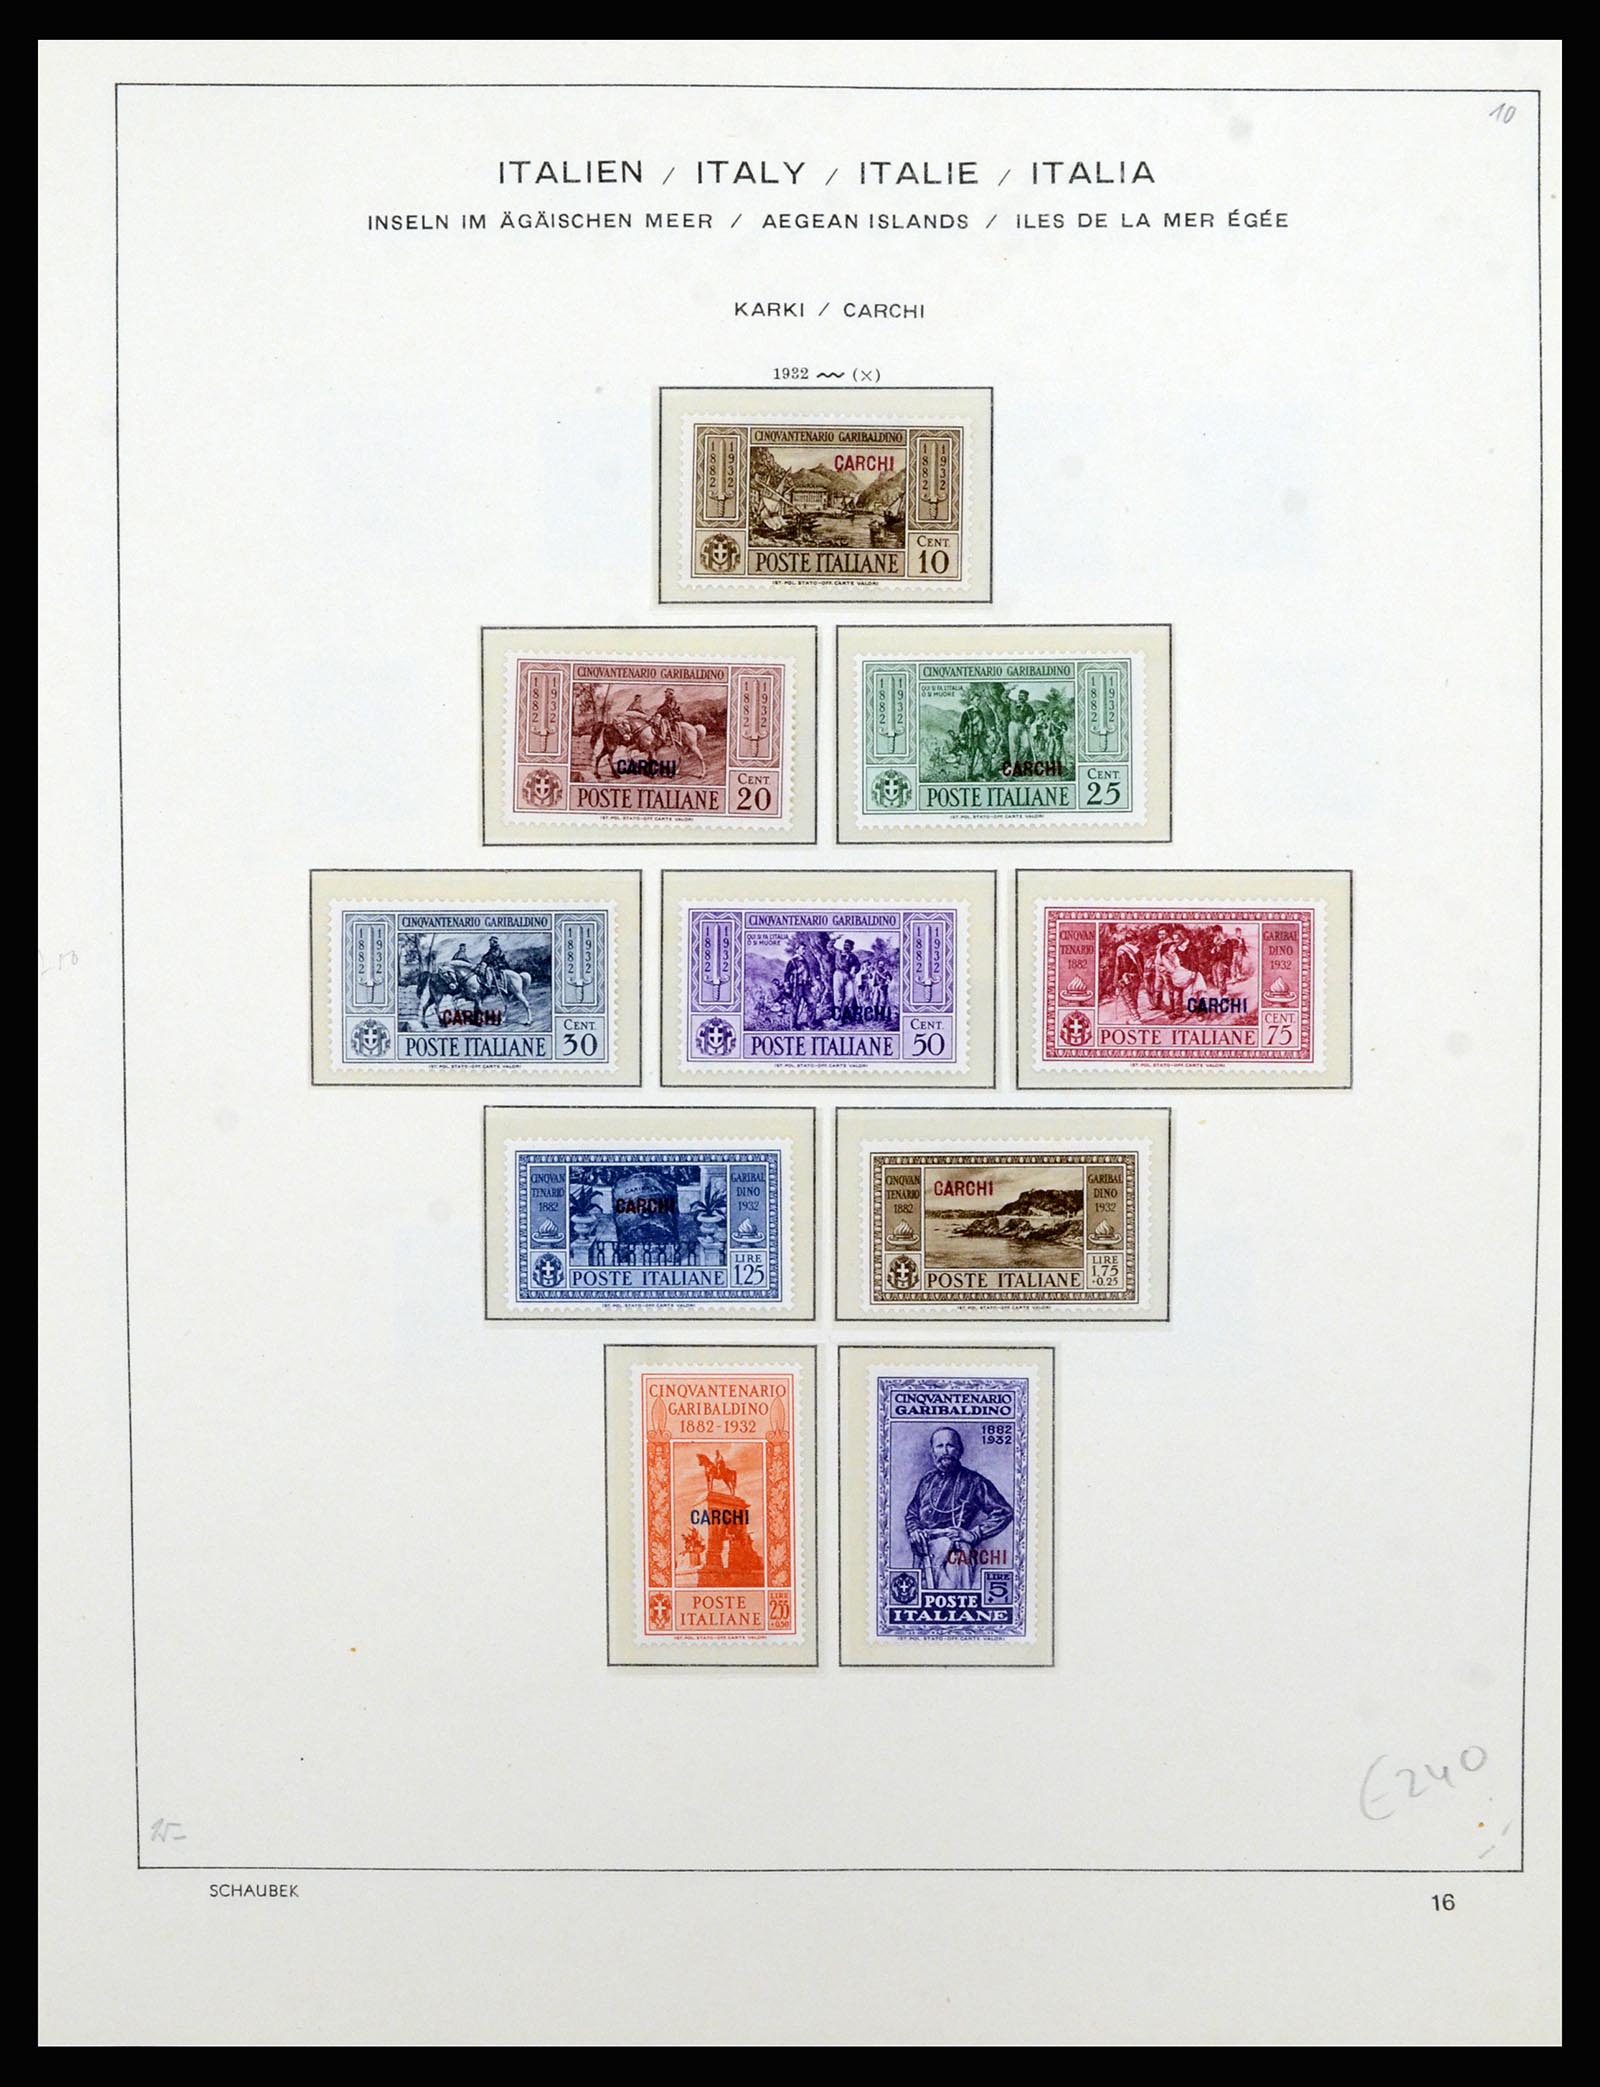 36577 042 - Stamp collection 36577 Italiaanse gebieden 1870-1940.